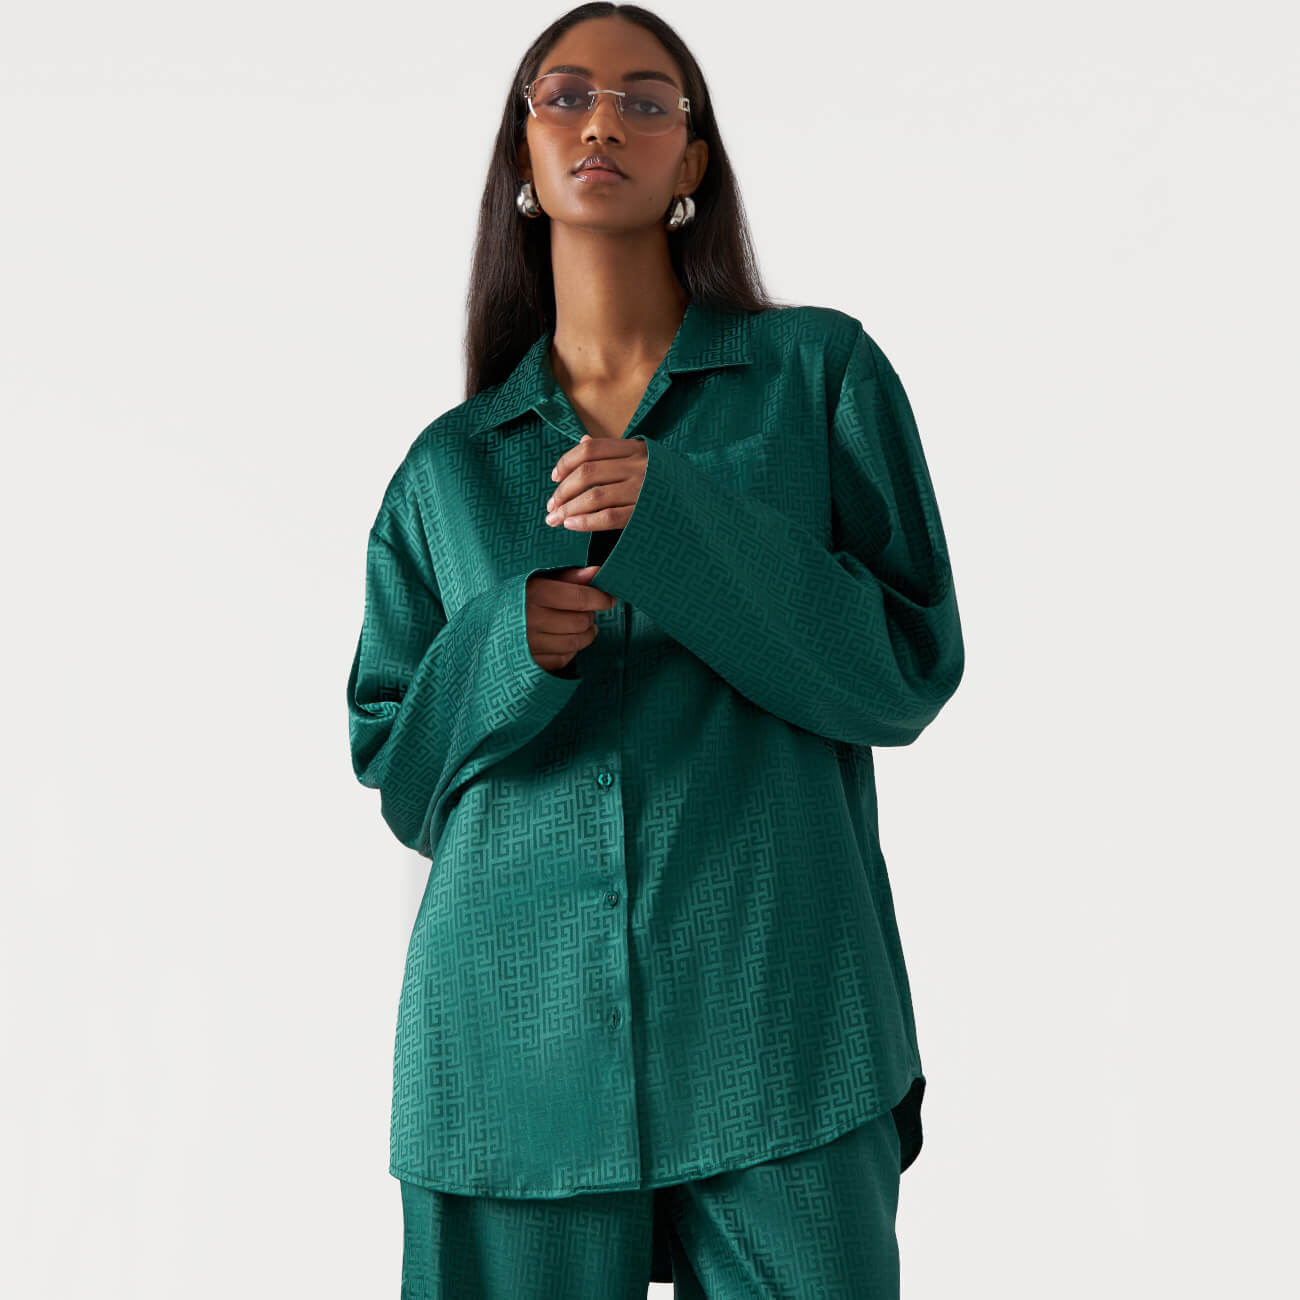 Рубашка женская, р. M, с длинным рукавом, полиэстер, зеленая, Жаккардовый узор, Agnia рубашка женская р l с длинным рукавом полиэстер зеленая жаккардовый узор agnia